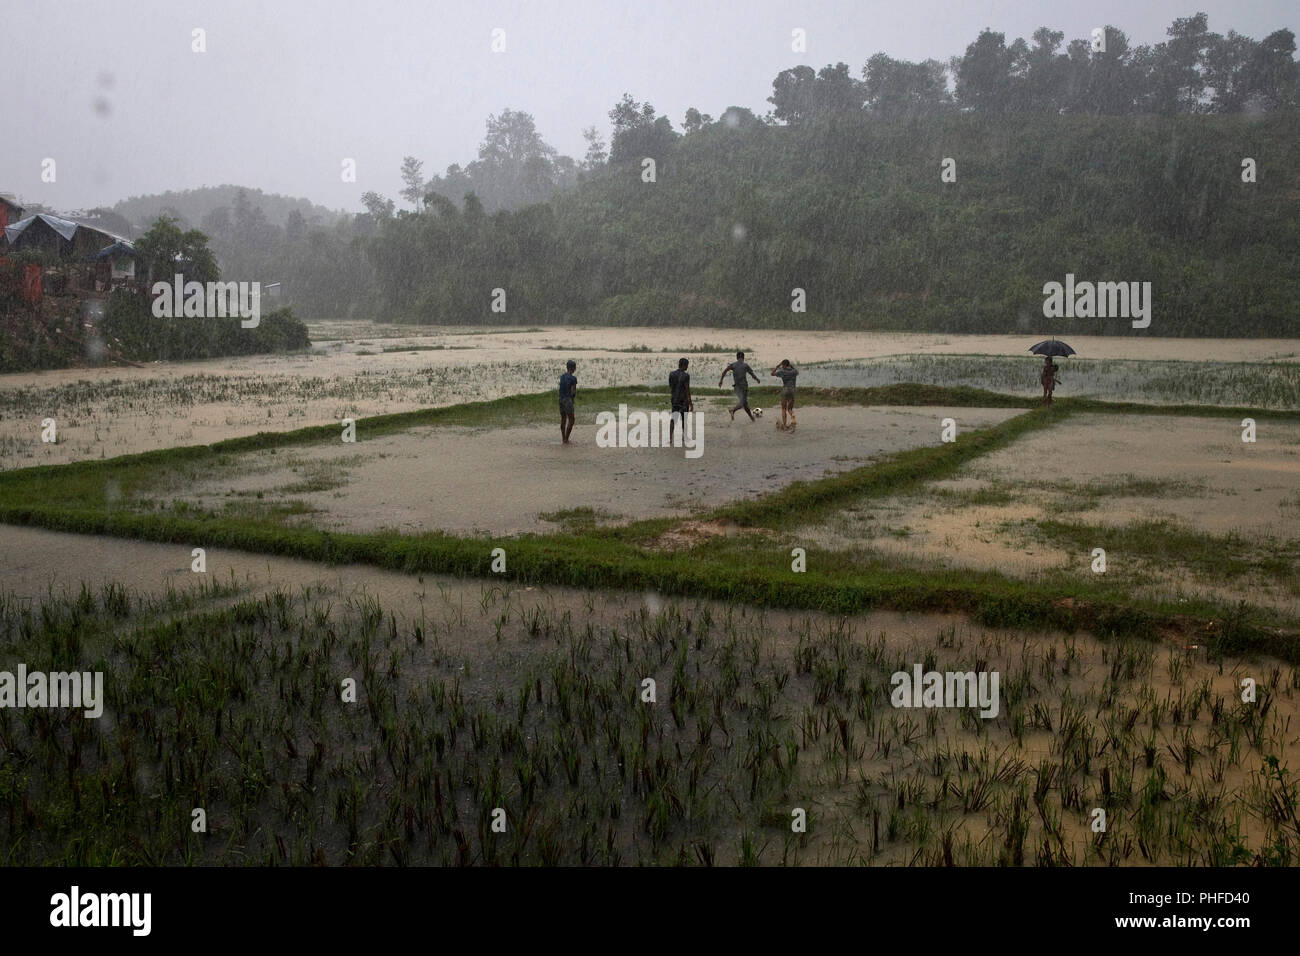 Rohingya uomini giocare a calcio in un campo inondato in Charkmakul, uno dei campi per il ricovero di oltre 800.000 profughi Rohingya, Cox's Bazar, Bangladesh, giugno 1 Foto Stock